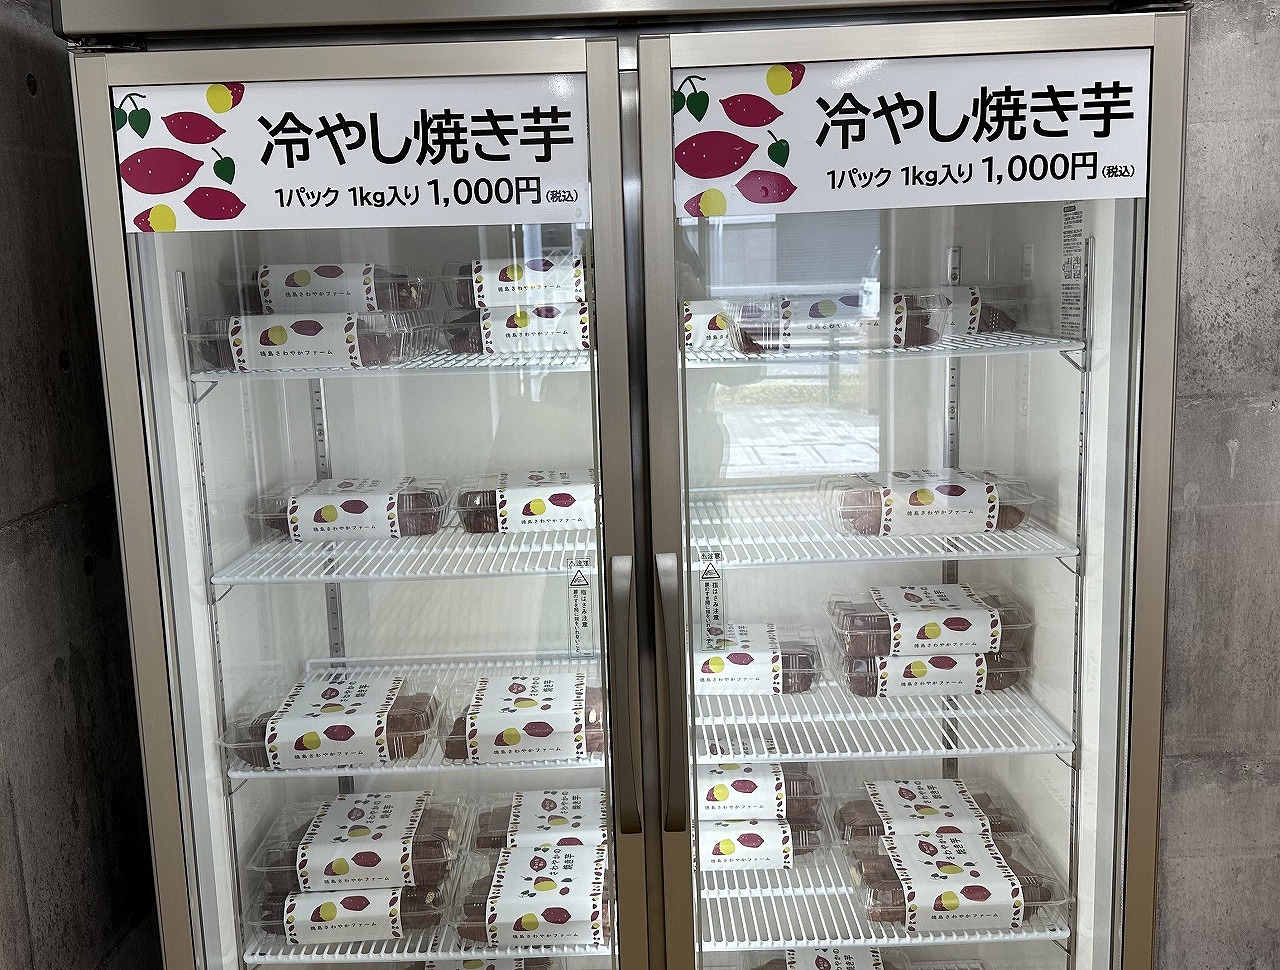 24時間営業「神戸餃子楼 冷凍生餃子無人直売所 甲南店」の跡地に、